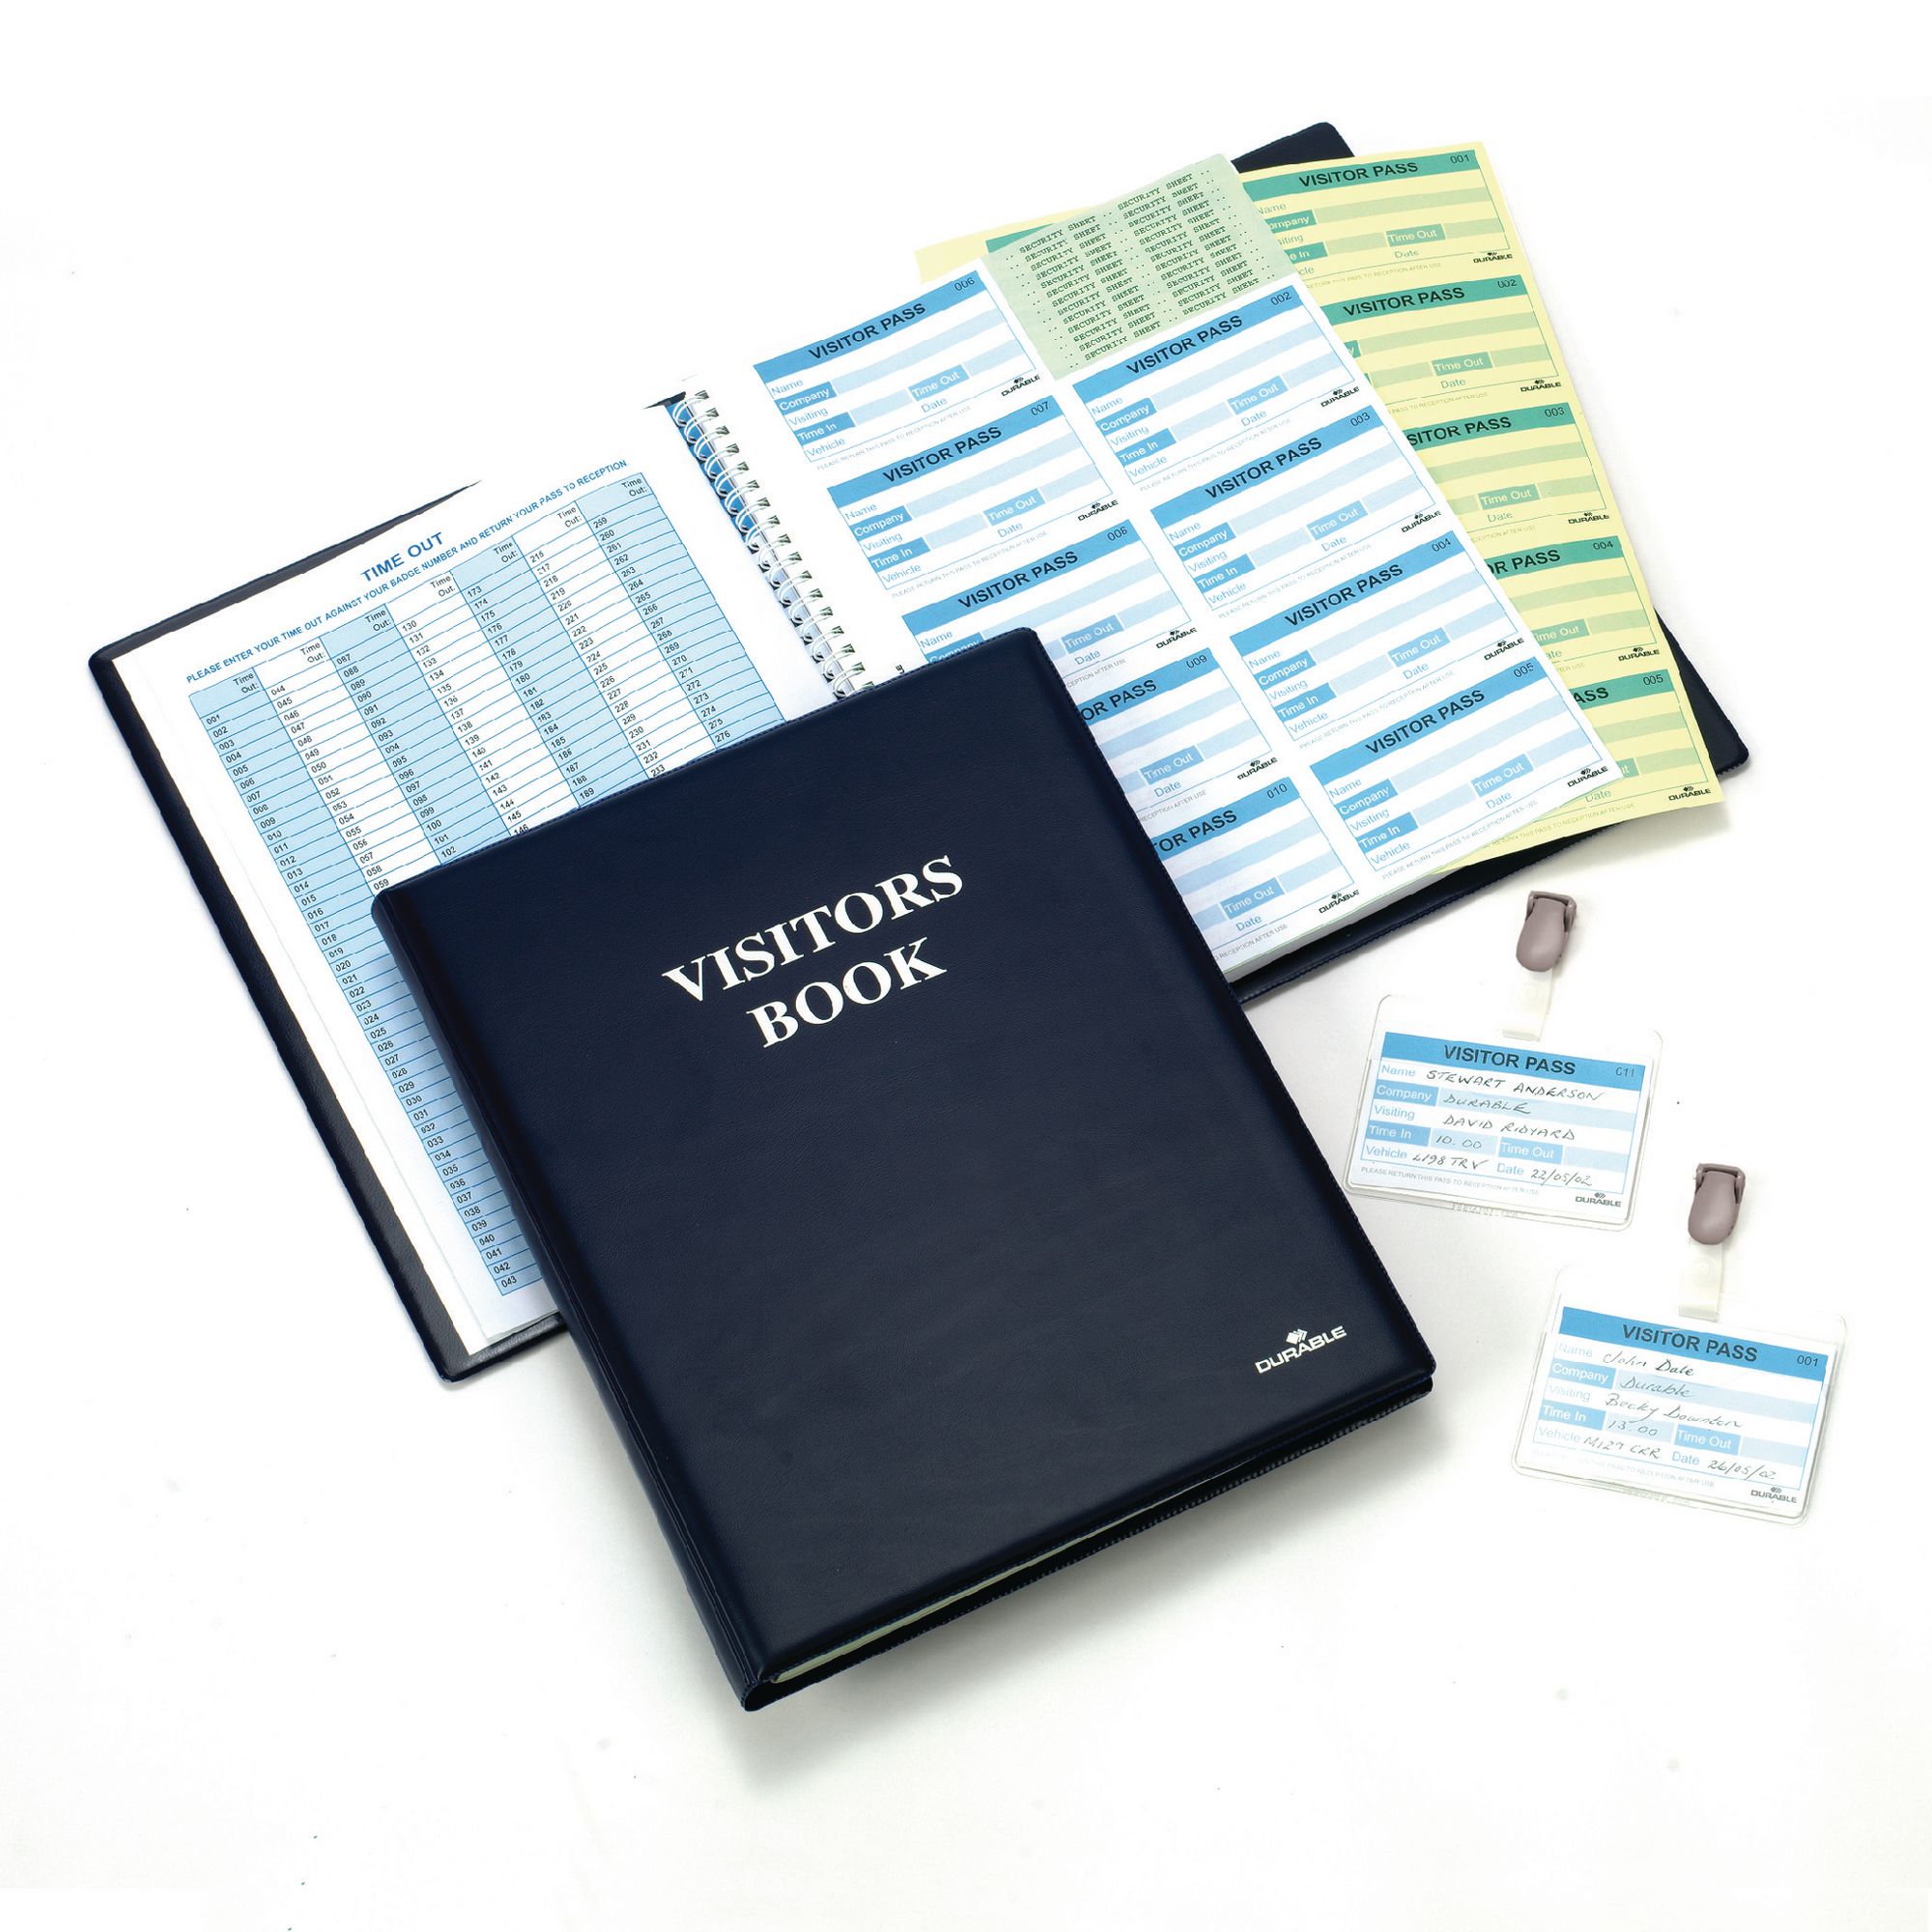 bookfactory® Libro de registro de visitantes/registro de visitantes/Visitor Book  de inicio Smyth cosido Hardbound color azul  120 páginas 8 7/8 x 7 